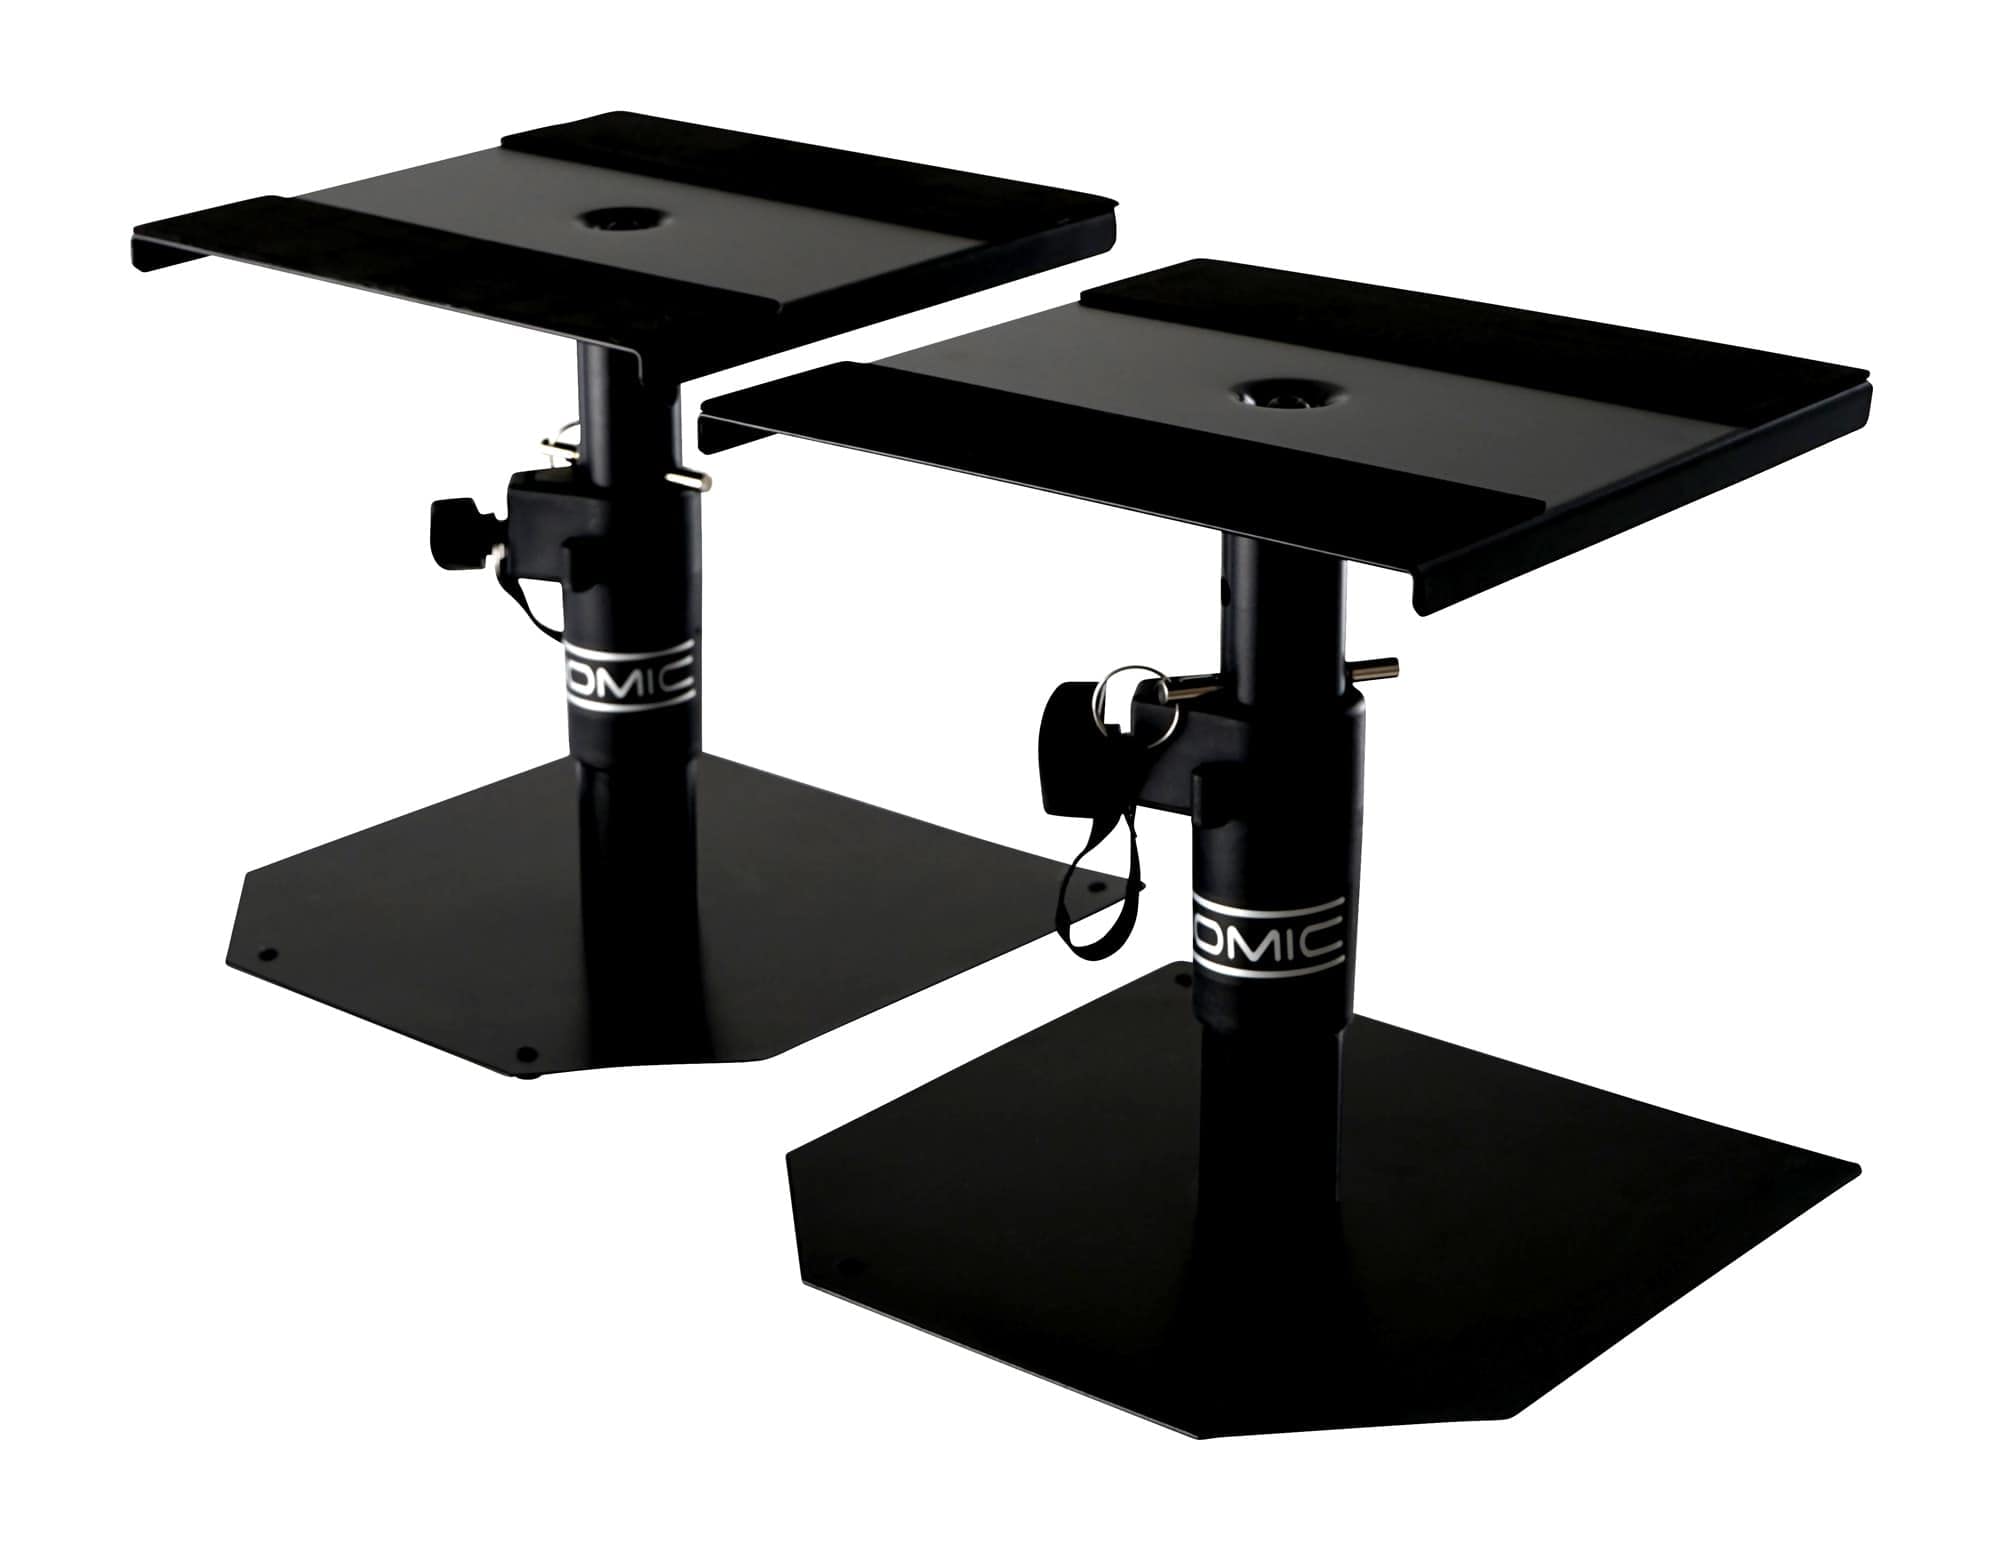 Pronomic SLS-15 Tischstative für Studio Monitore (2 stabile Boxenstative für Studiomonitore, niedrige Ausführung, höhenverstellbar von 18,5 cm bis 27,5 cm, Ablagefläche mit Moosgummistreifen) Schwarz